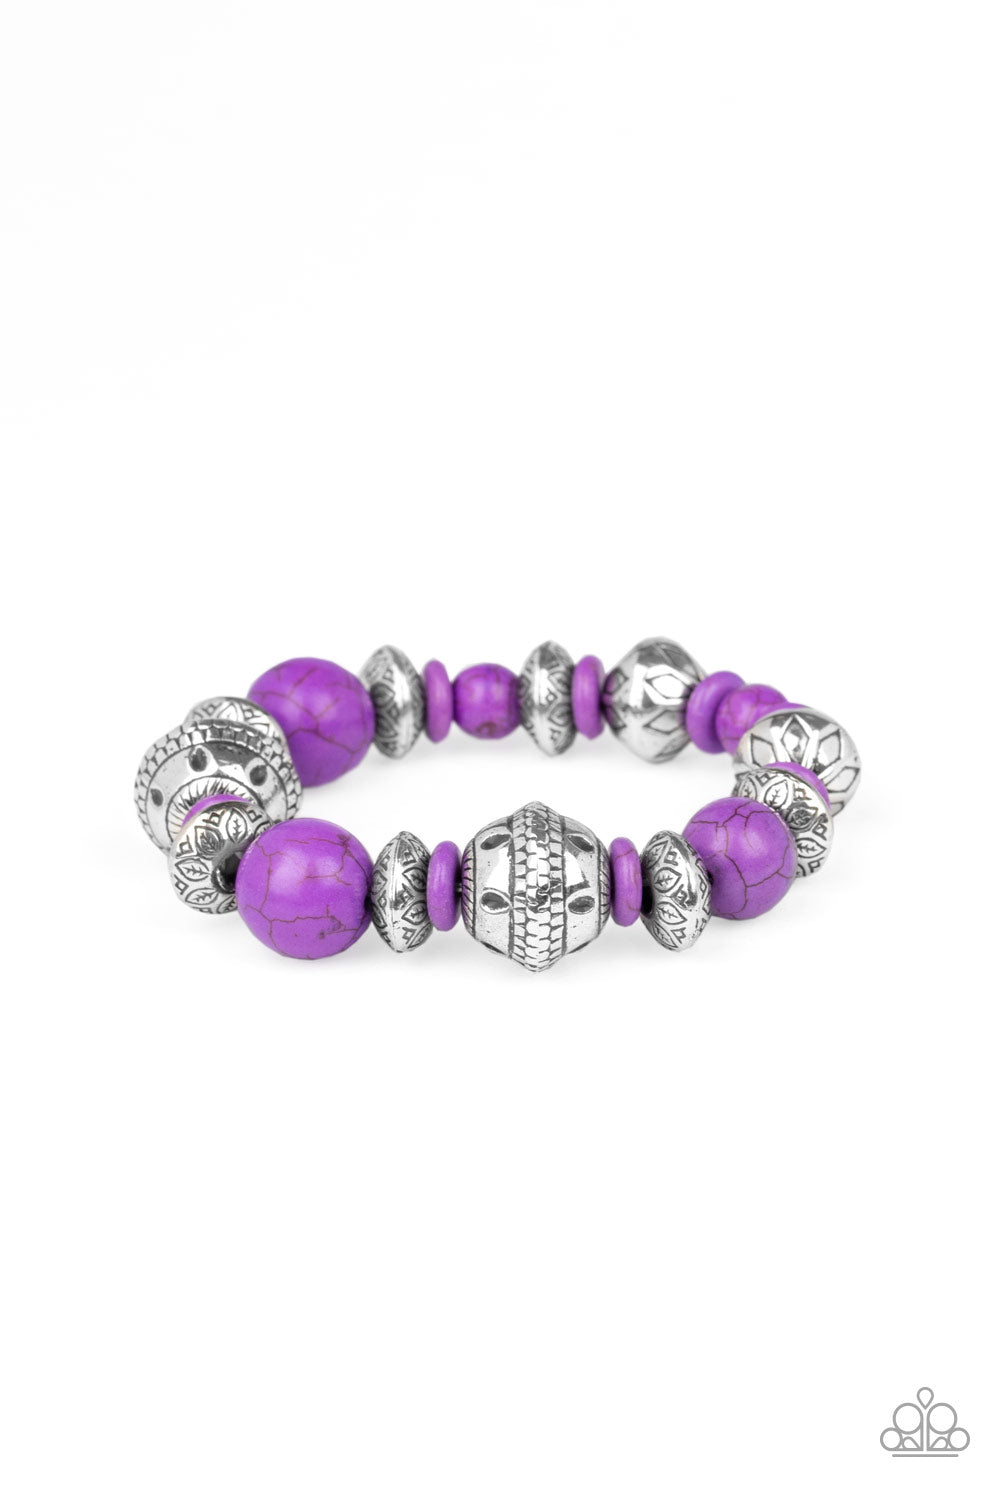 Paparazzi Bracelets - Majestic Masonry - Purple